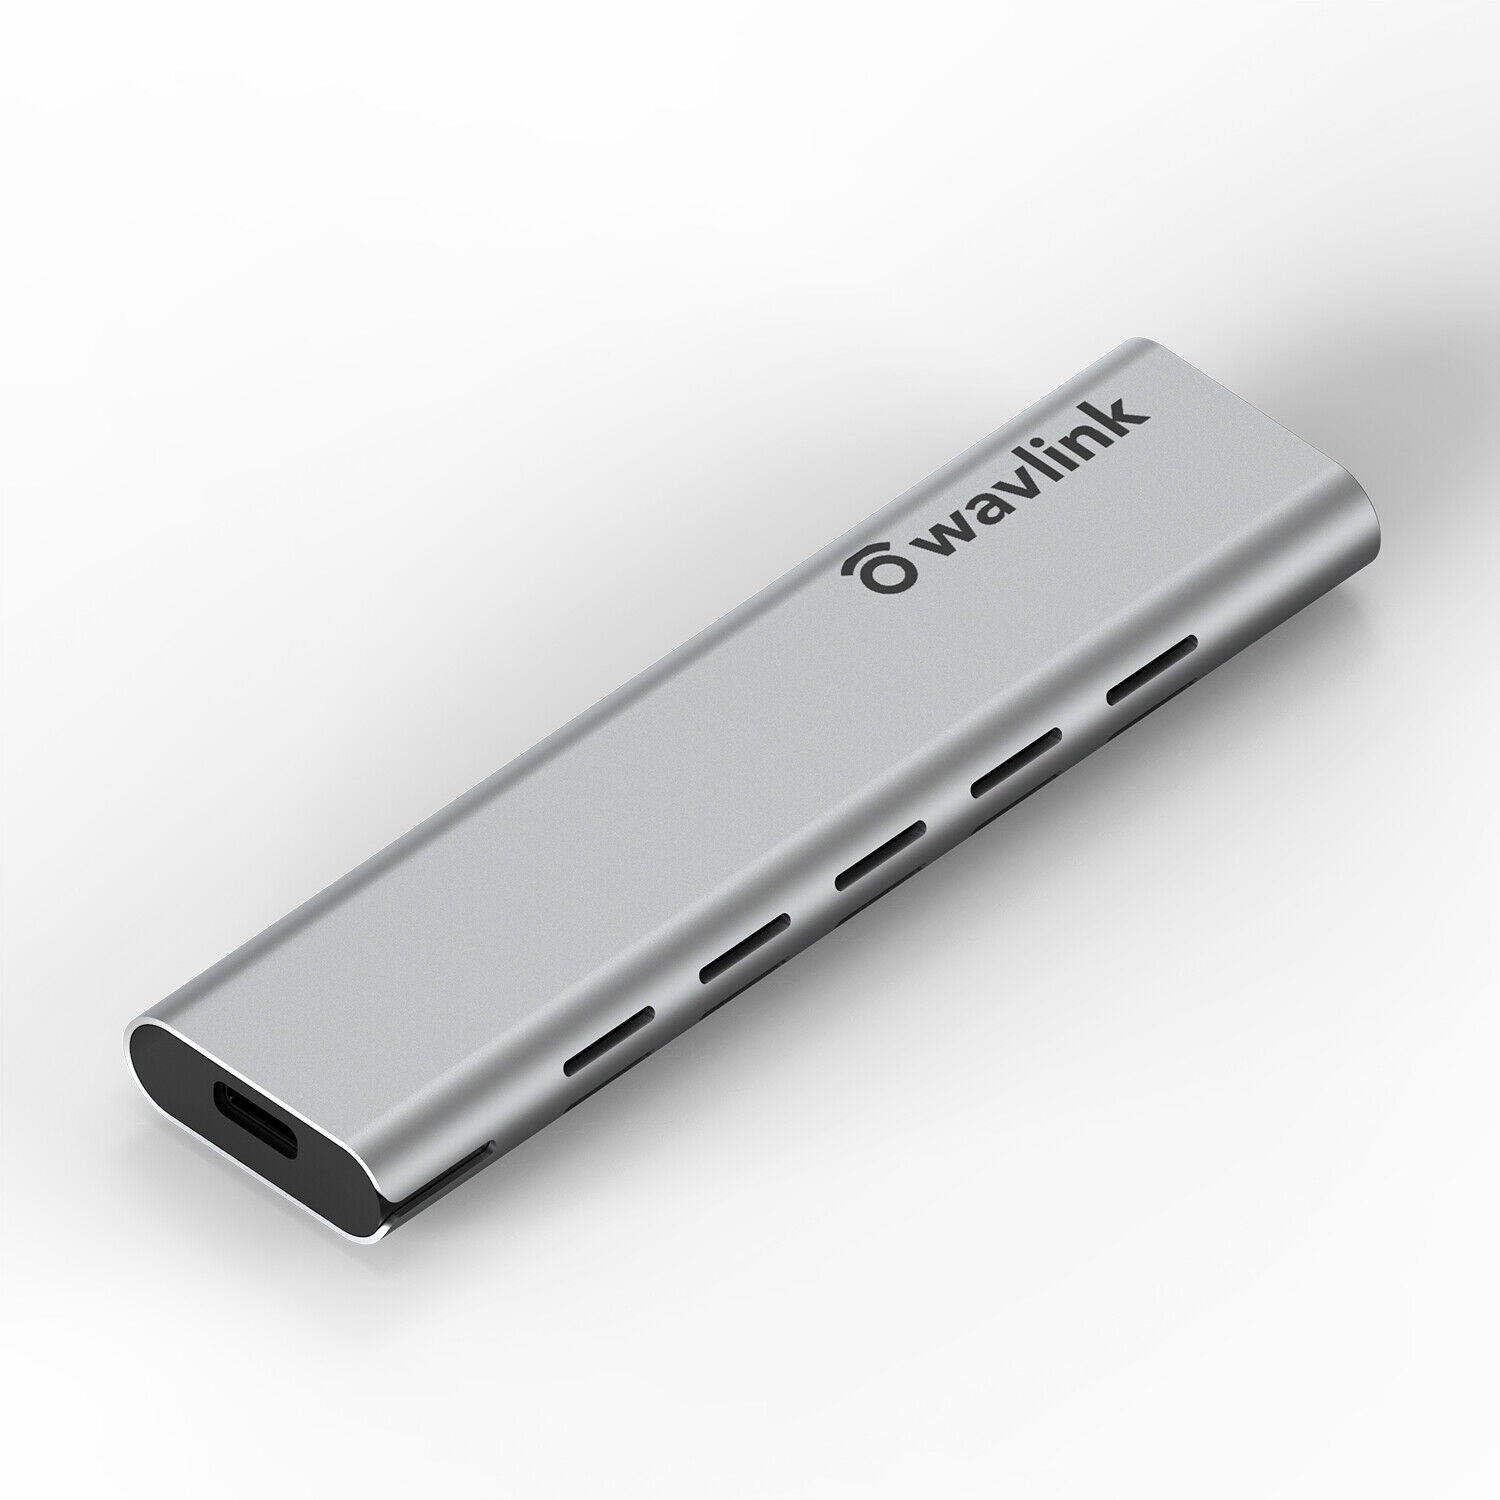 10Gbps M.2 NVMe SSD Enclosure USB 3.1 Gen 2 to NVMe PCI-E M.2 SSD External Case